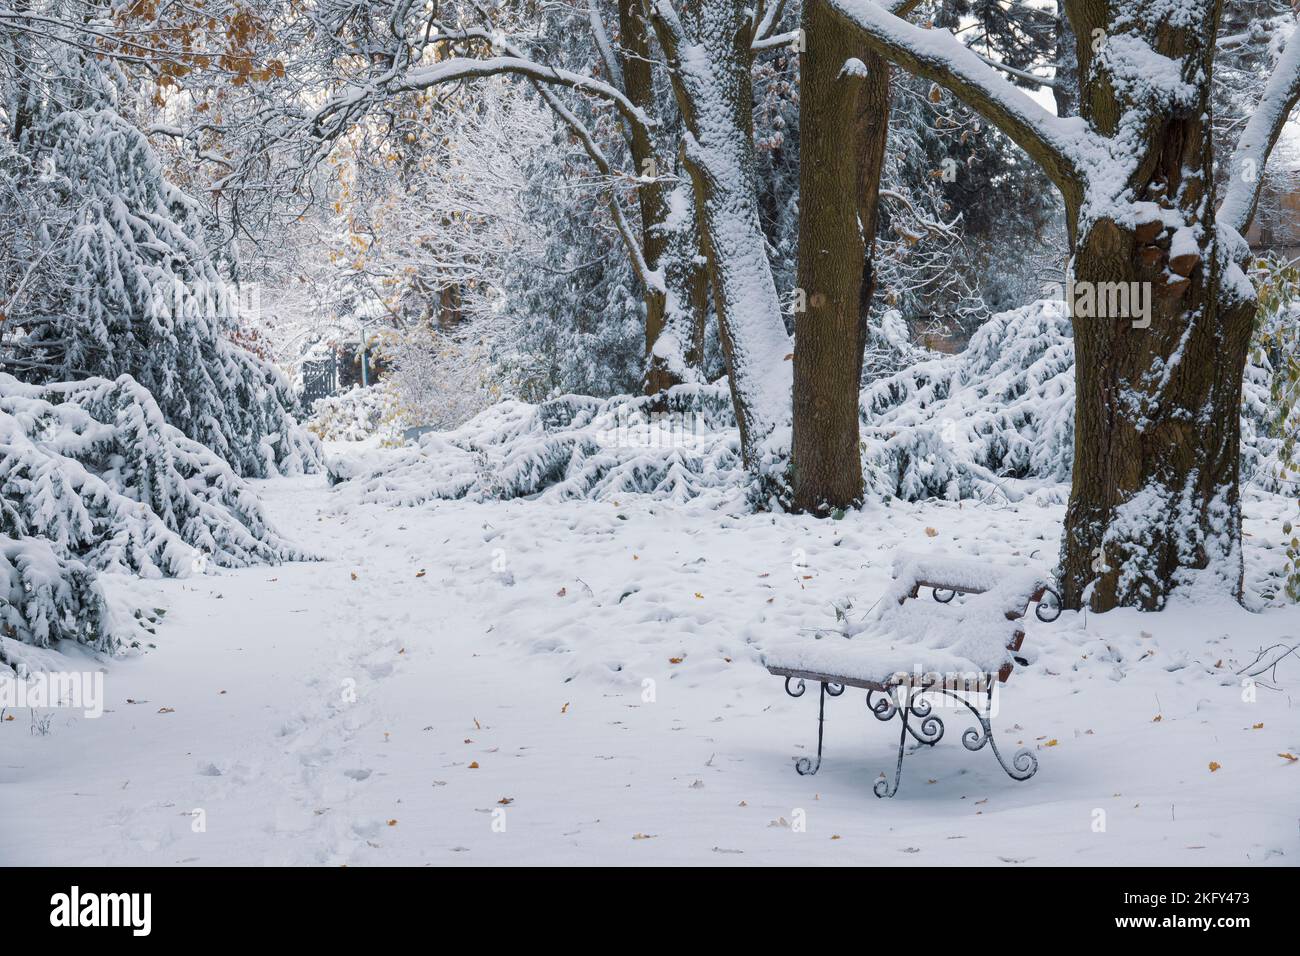 Belle scène dans le parc d'hiver. Banc couvert de neige et empreintes de pas sur la neige dans le parc d'hiver Banque D'Images